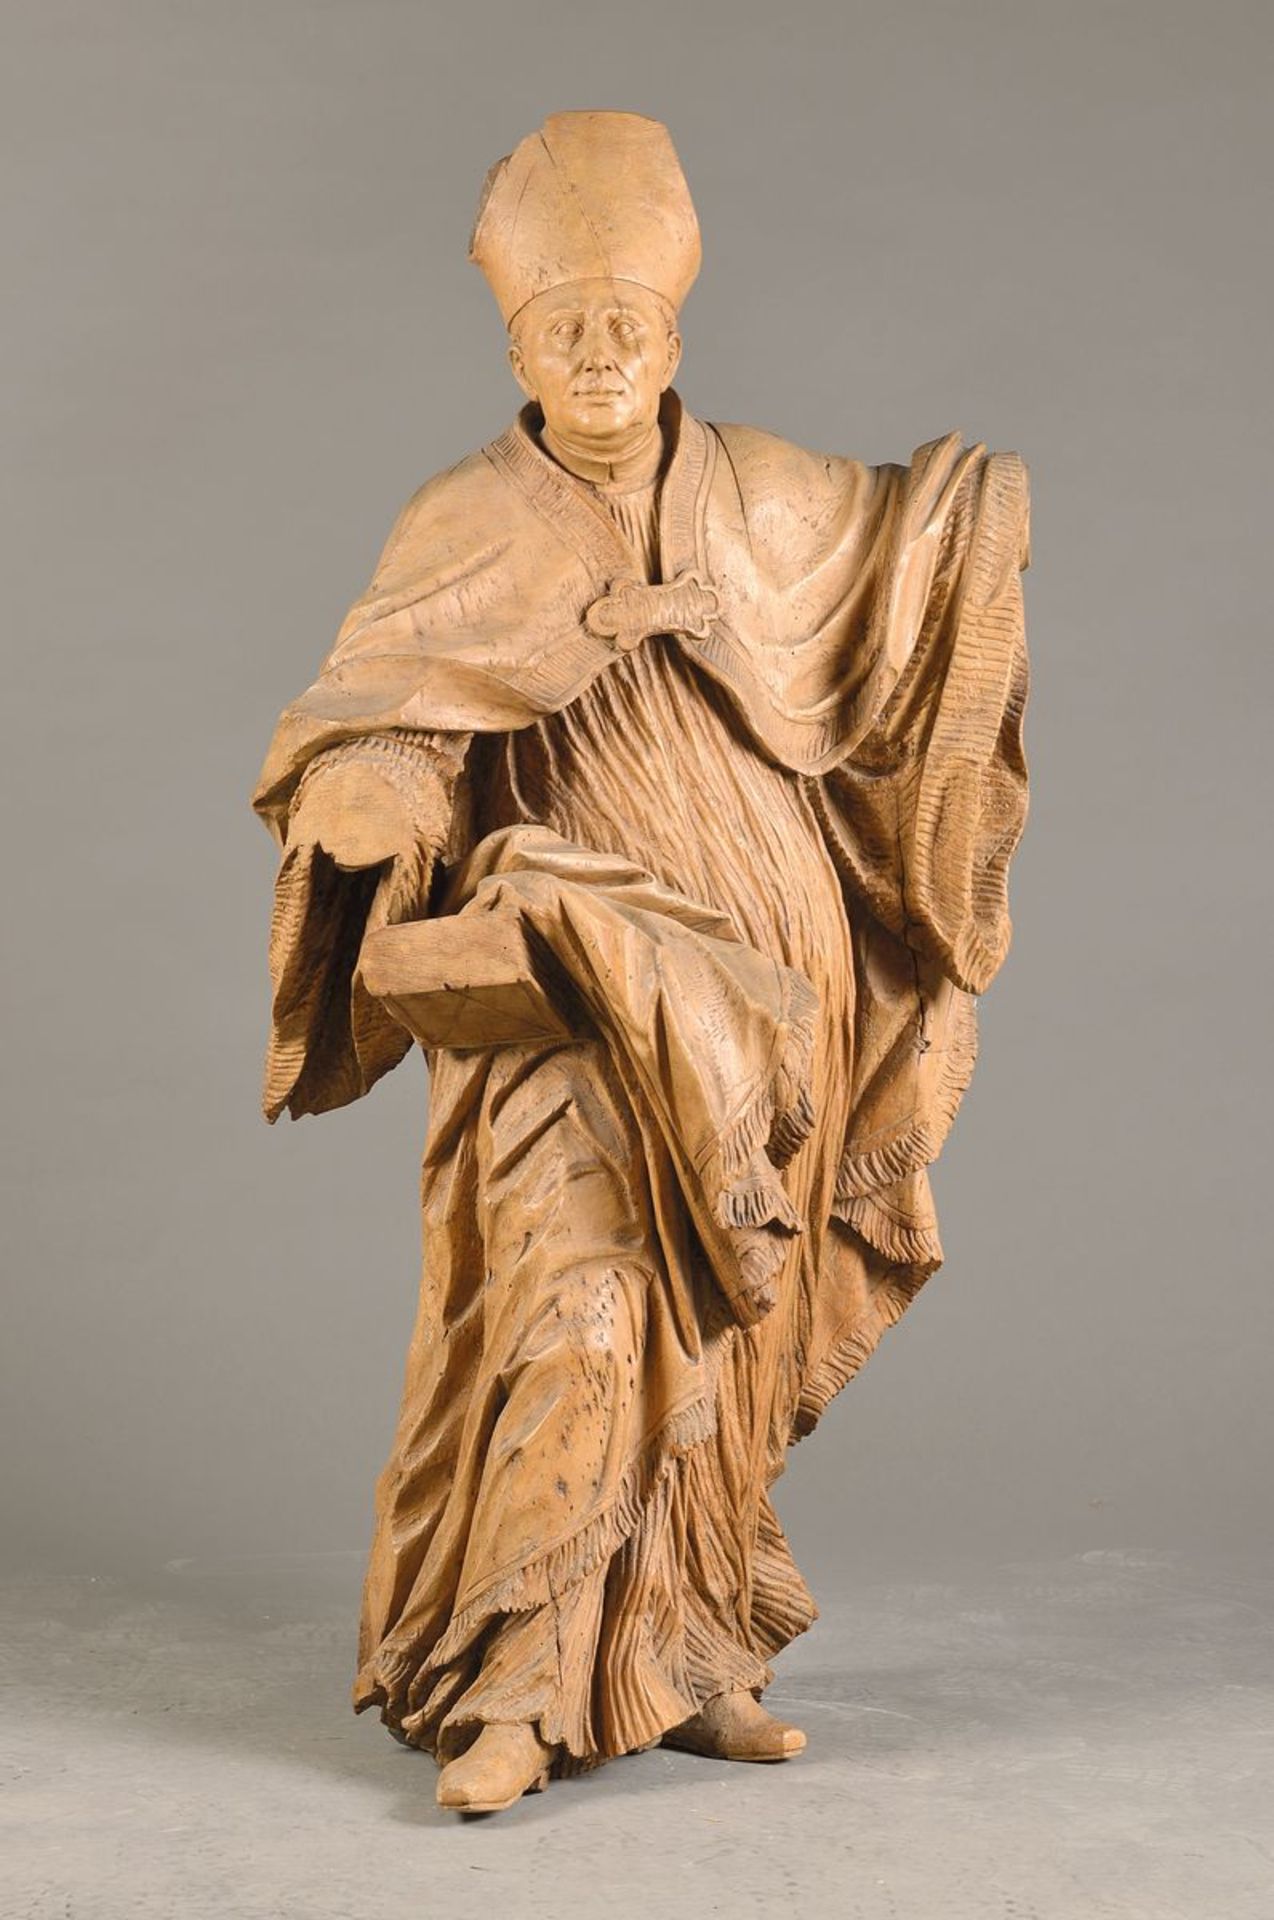 Skulptur eines Bischof, süddeutsch oder böhmisch, um 1760-80, Lindenholz geschnitzt, Hände fehlen,